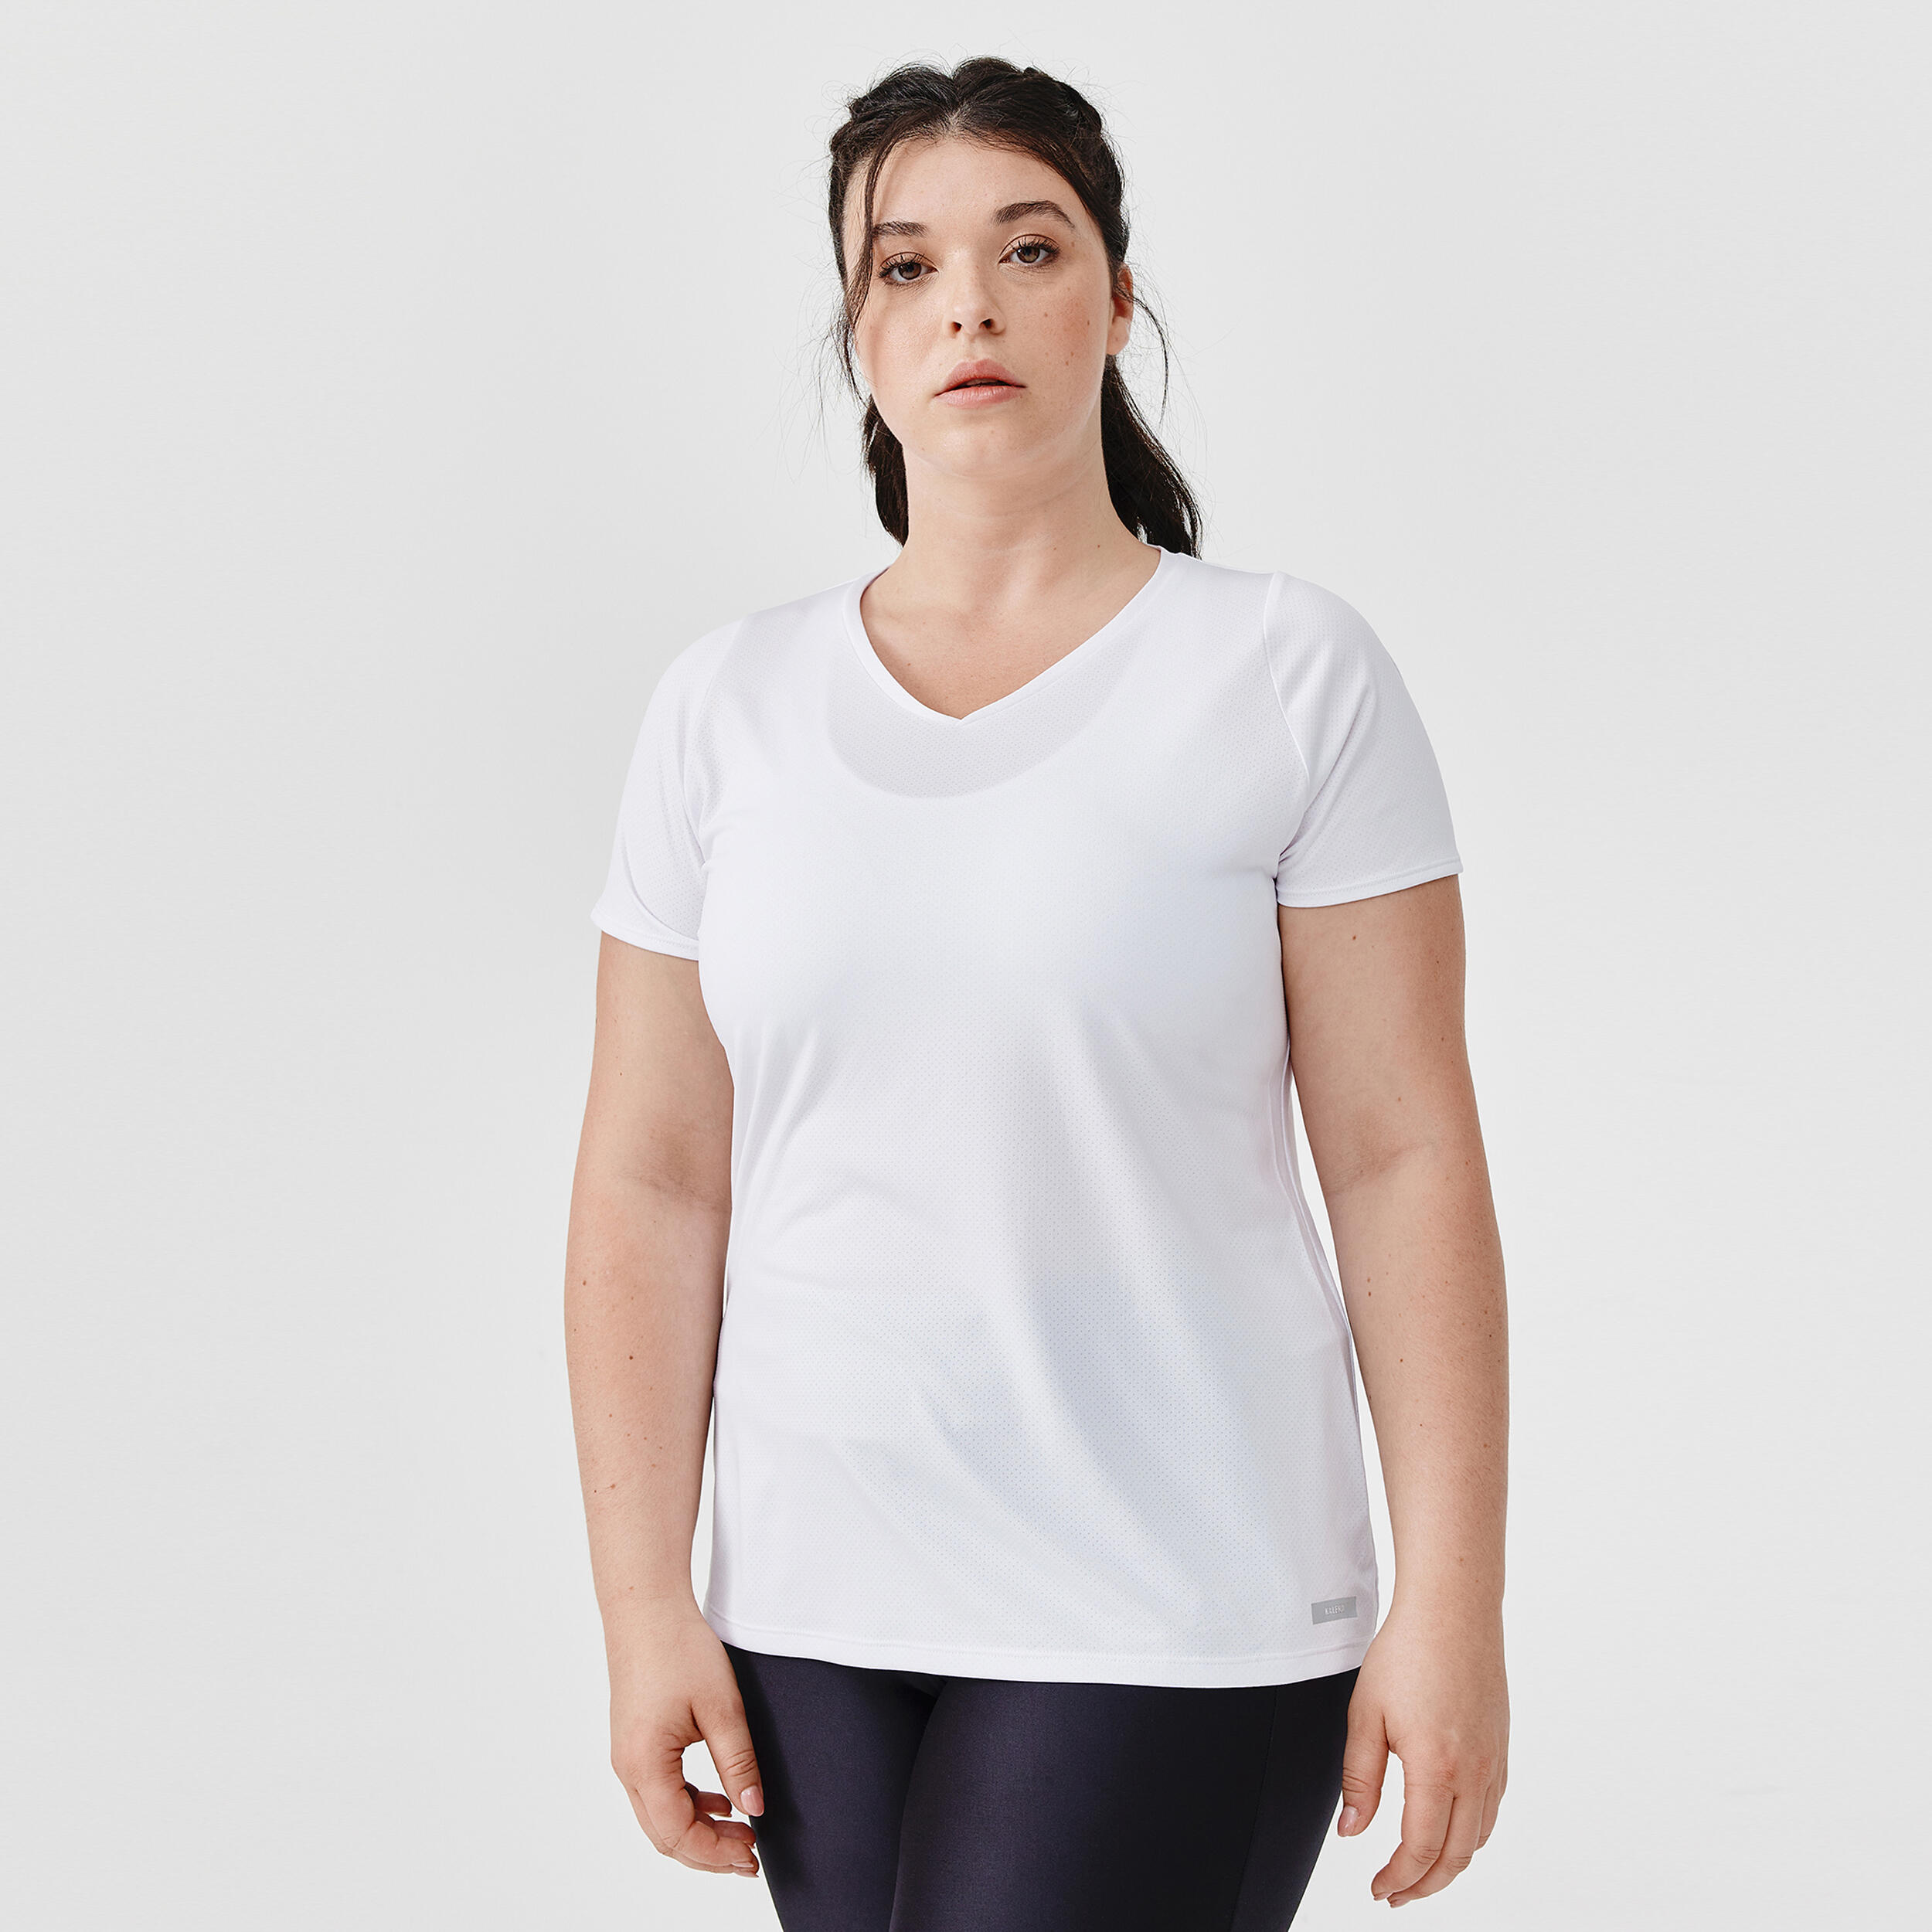 KALENJI Women's breathable short-sleeved running T-Shirt Dry - white